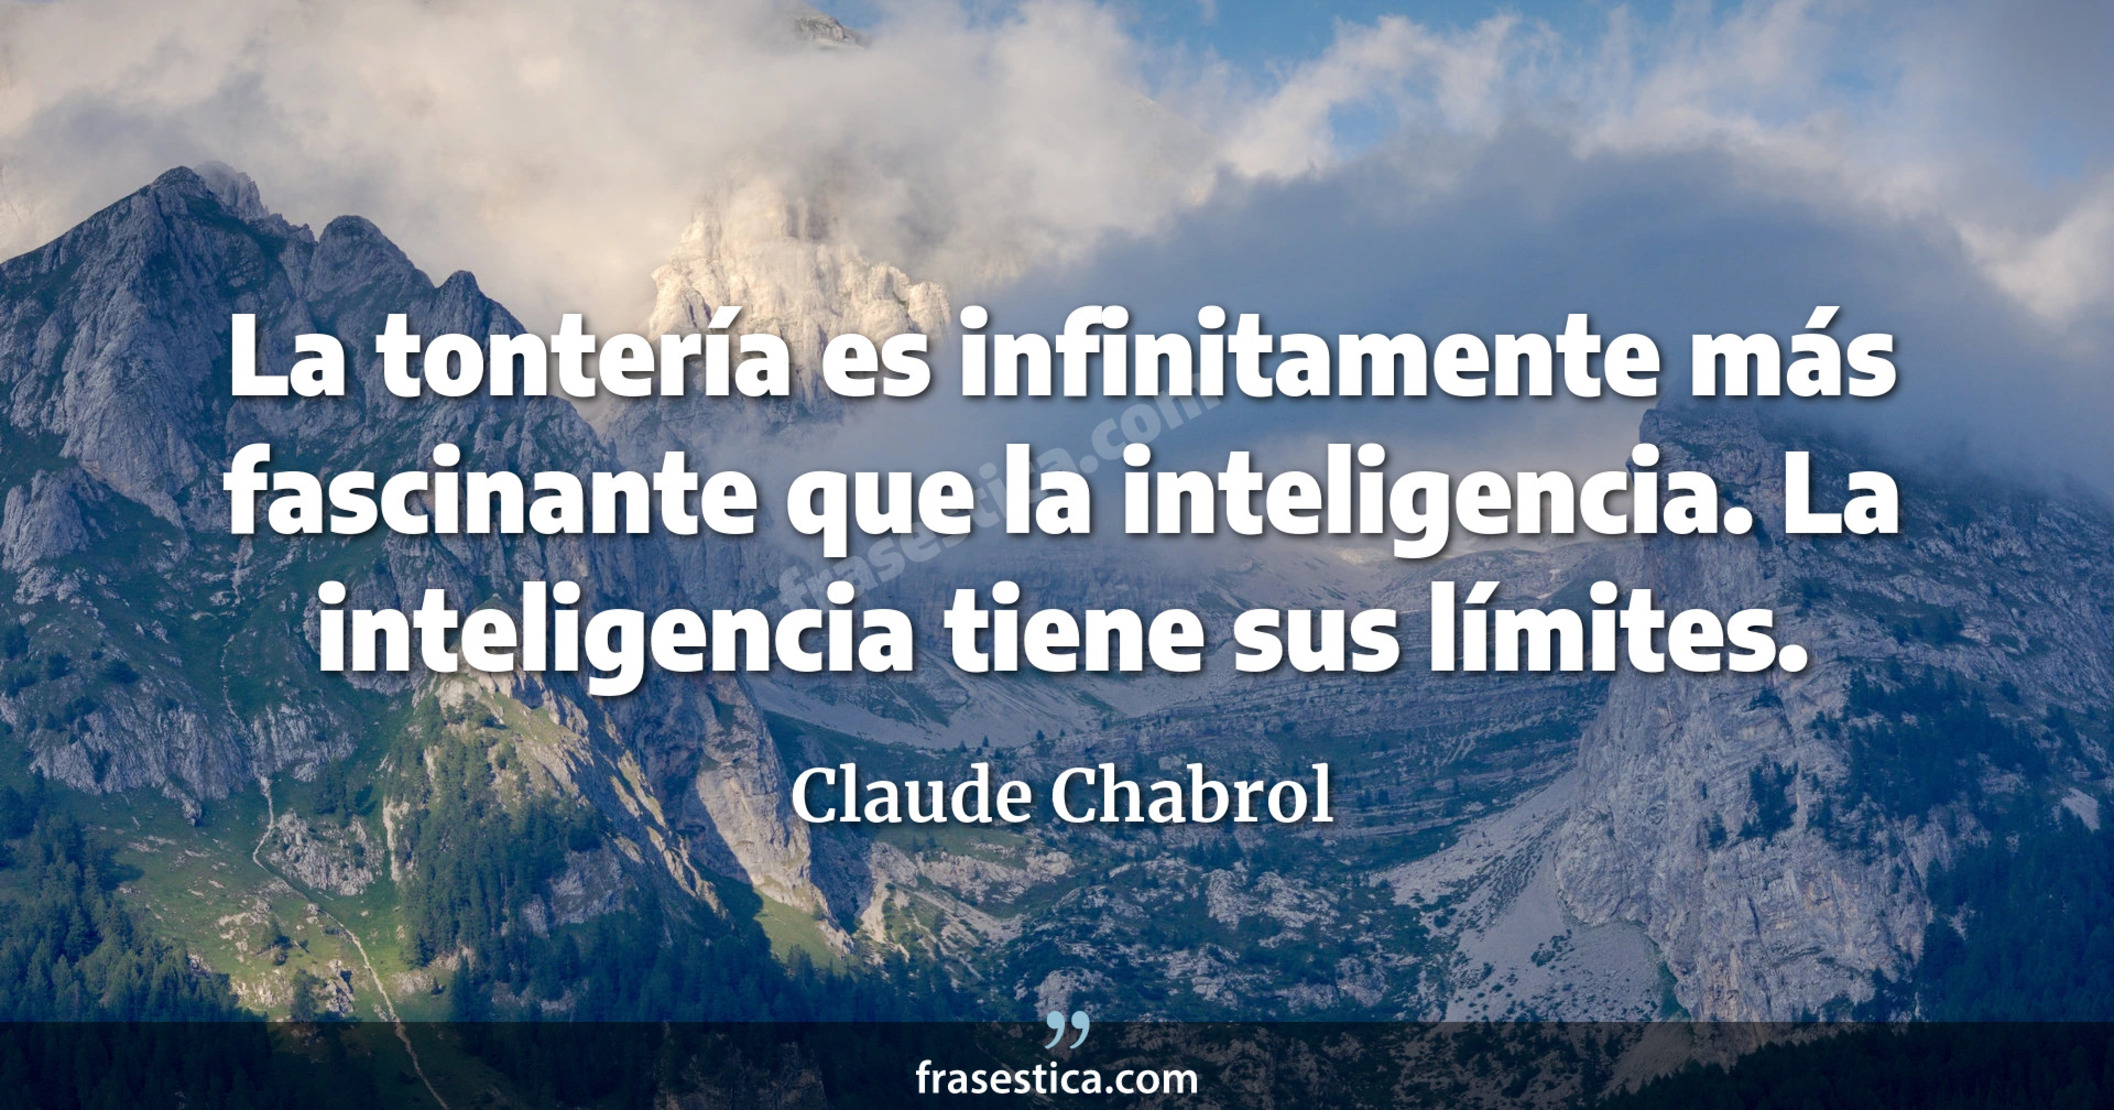 La tontería es infinitamente más fascinante que la inteligencia. La inteligencia tiene sus límites. - Claude Chabrol